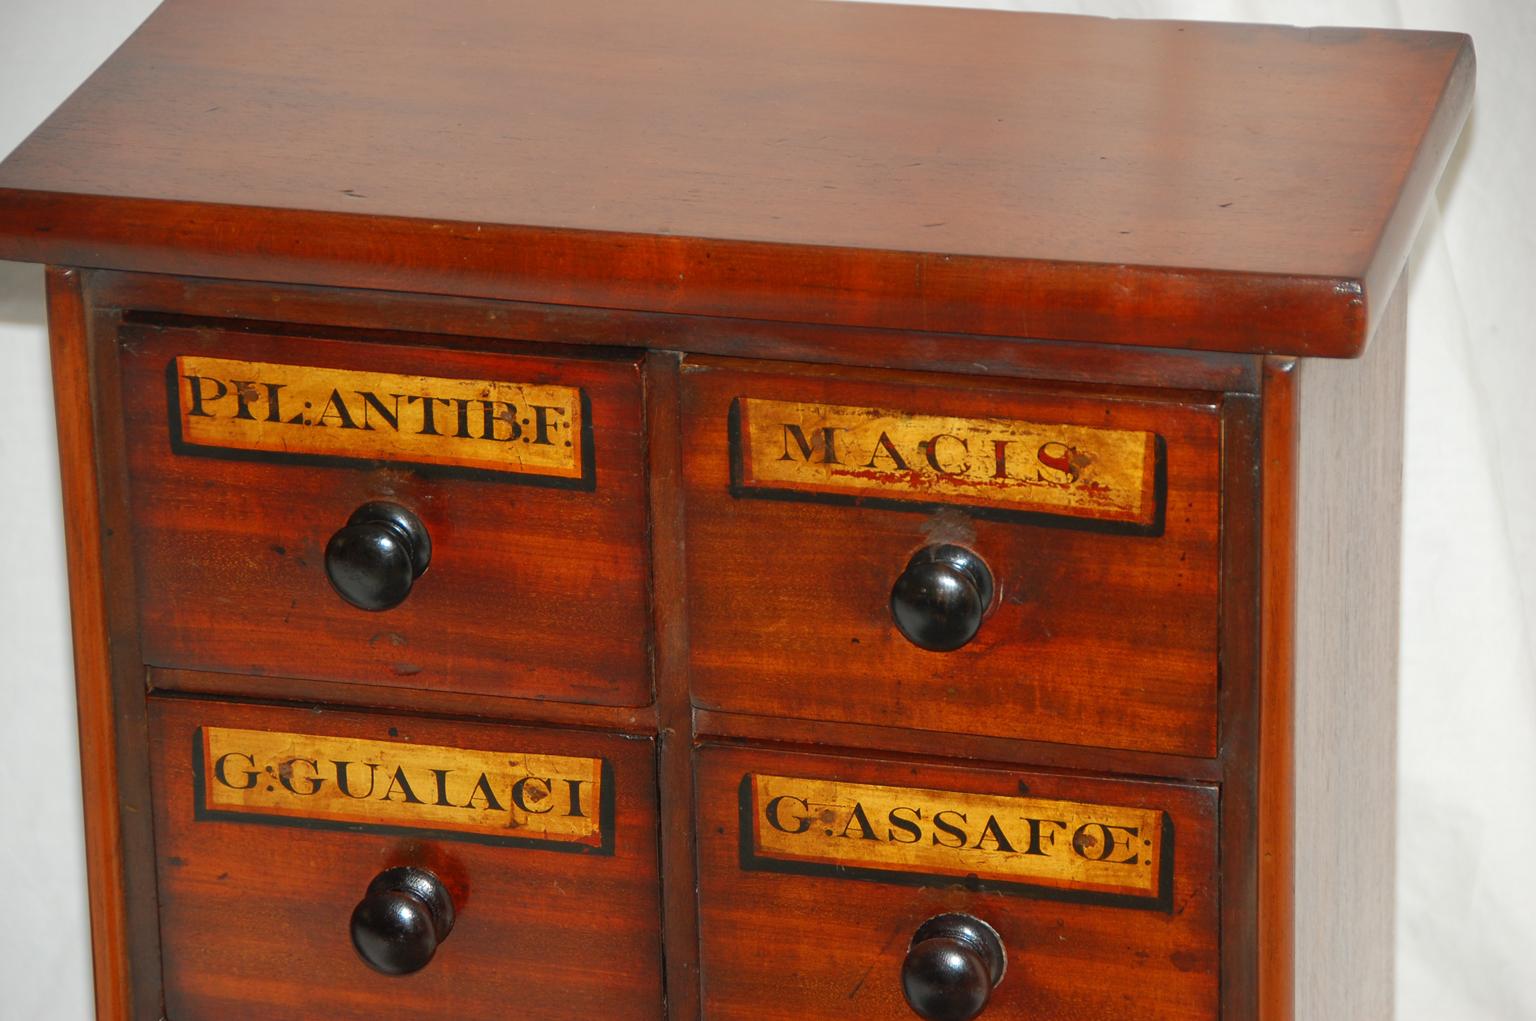 Englisch viktorianischen Zeit Paar kleine Schränke aus Mahagoni Apotheker Schubladen mit Original-Etiketten gemacht. Diese waren ursprünglich in eine Wand einer englischen Apotheke aus dem 19. Jahrhundert eingebaut und wurden nun als ein Paar